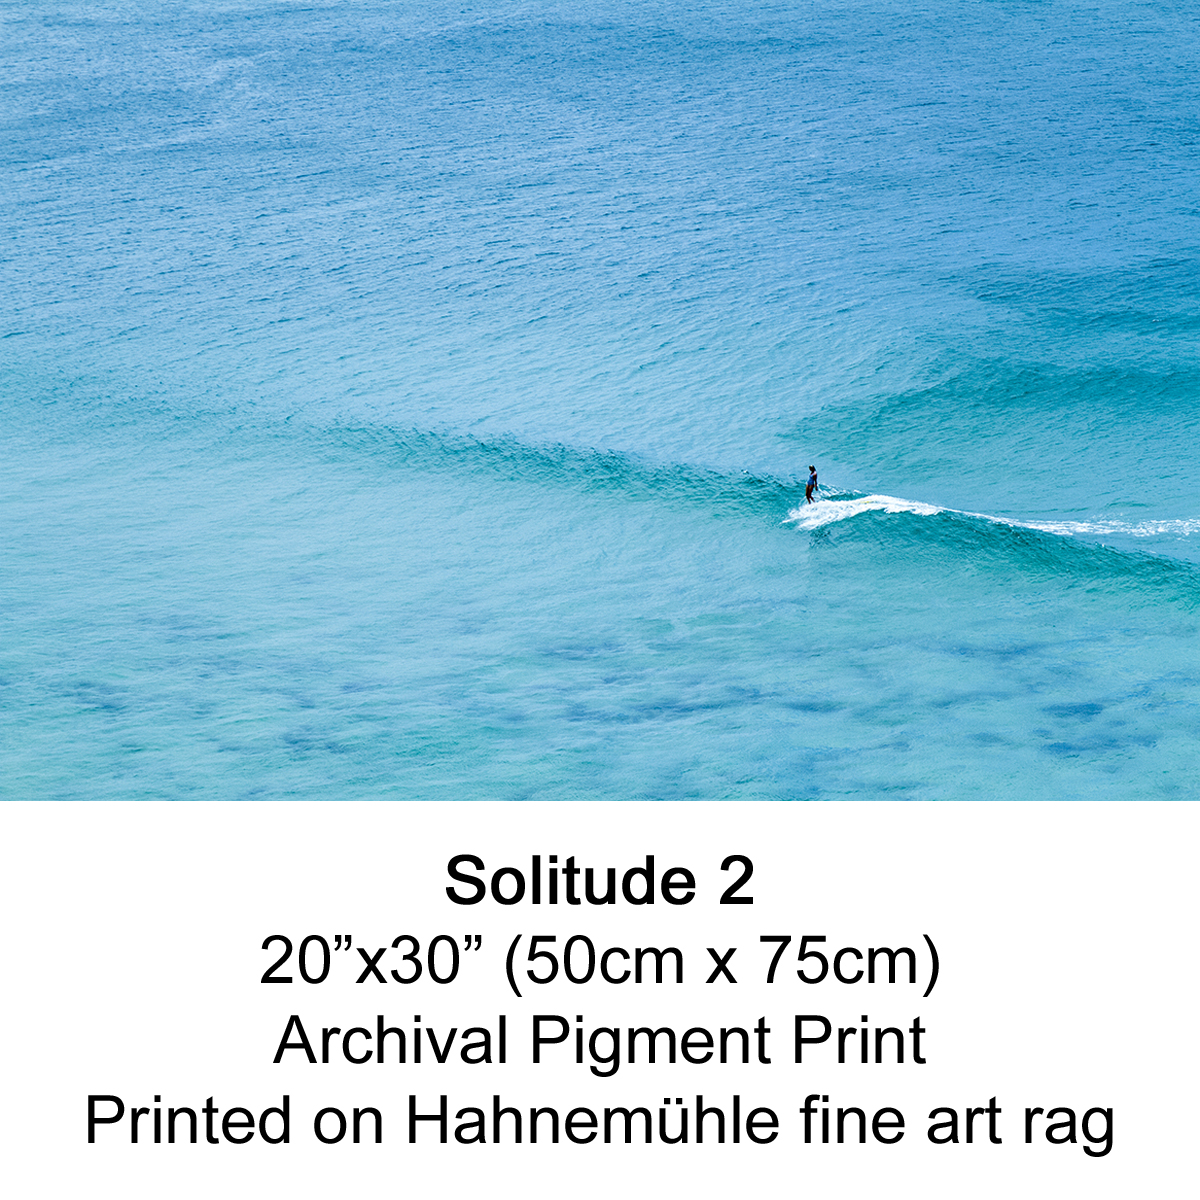 Solitude 2 by fran miller.jpg